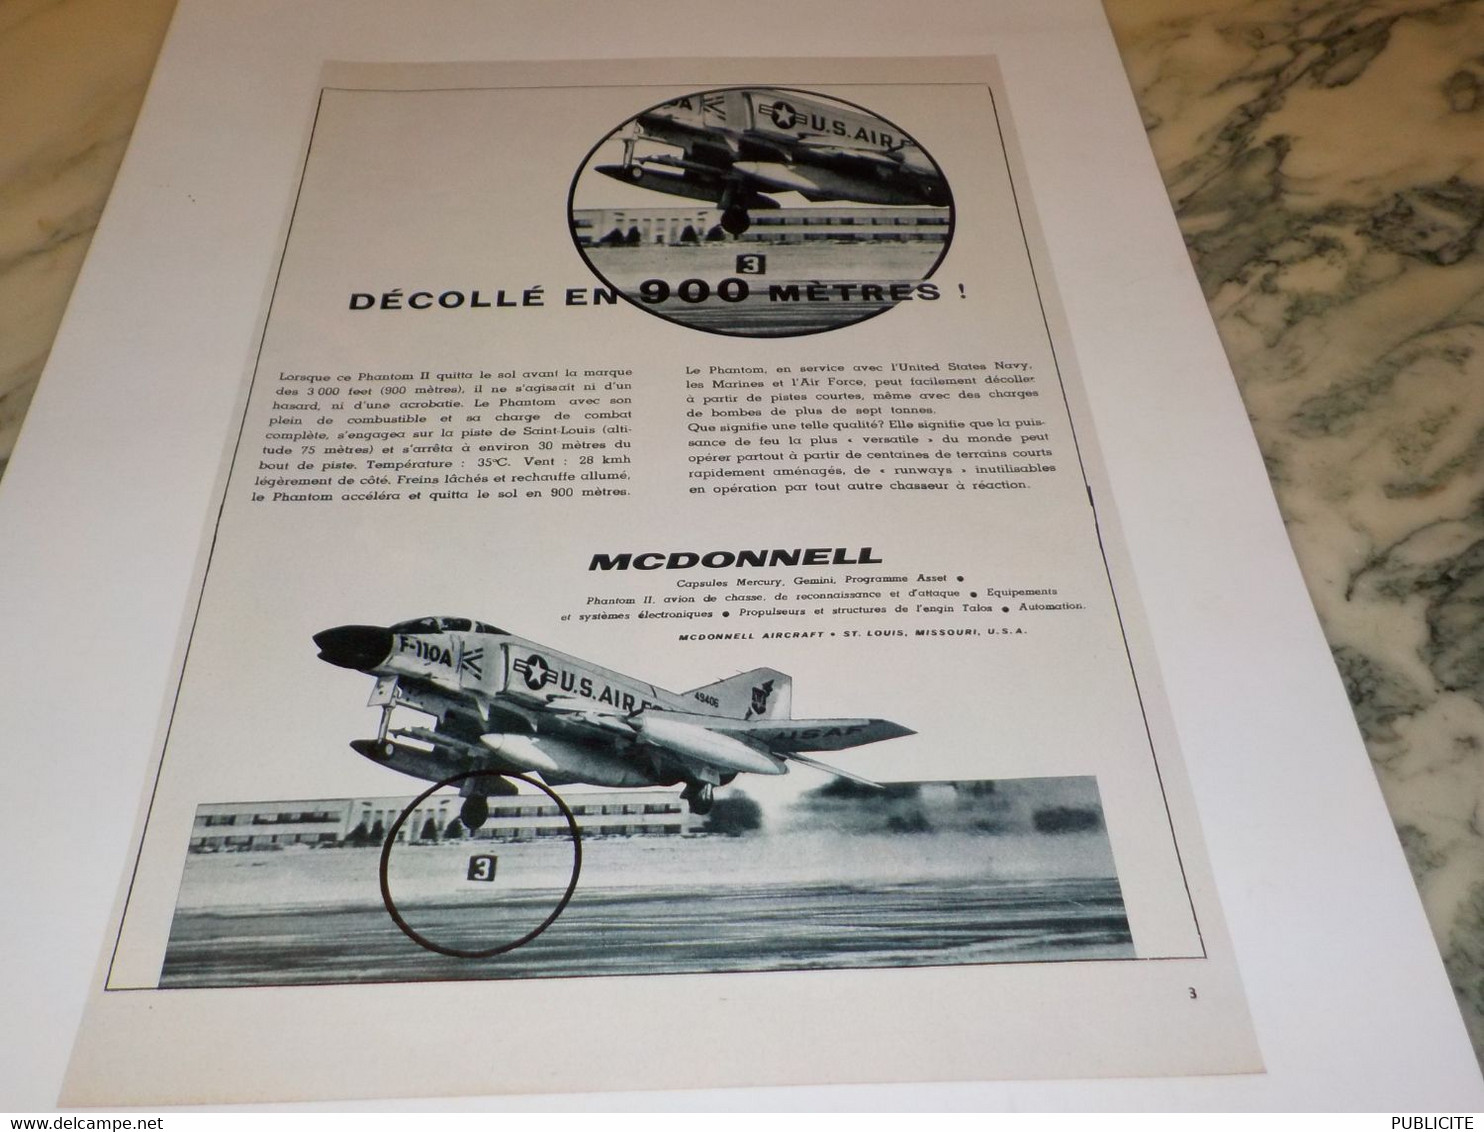 ANCIENNE PUBLICITE AVION DECOLLE EN 900 METRES PAR MC DONNELL  1963 - Advertisements